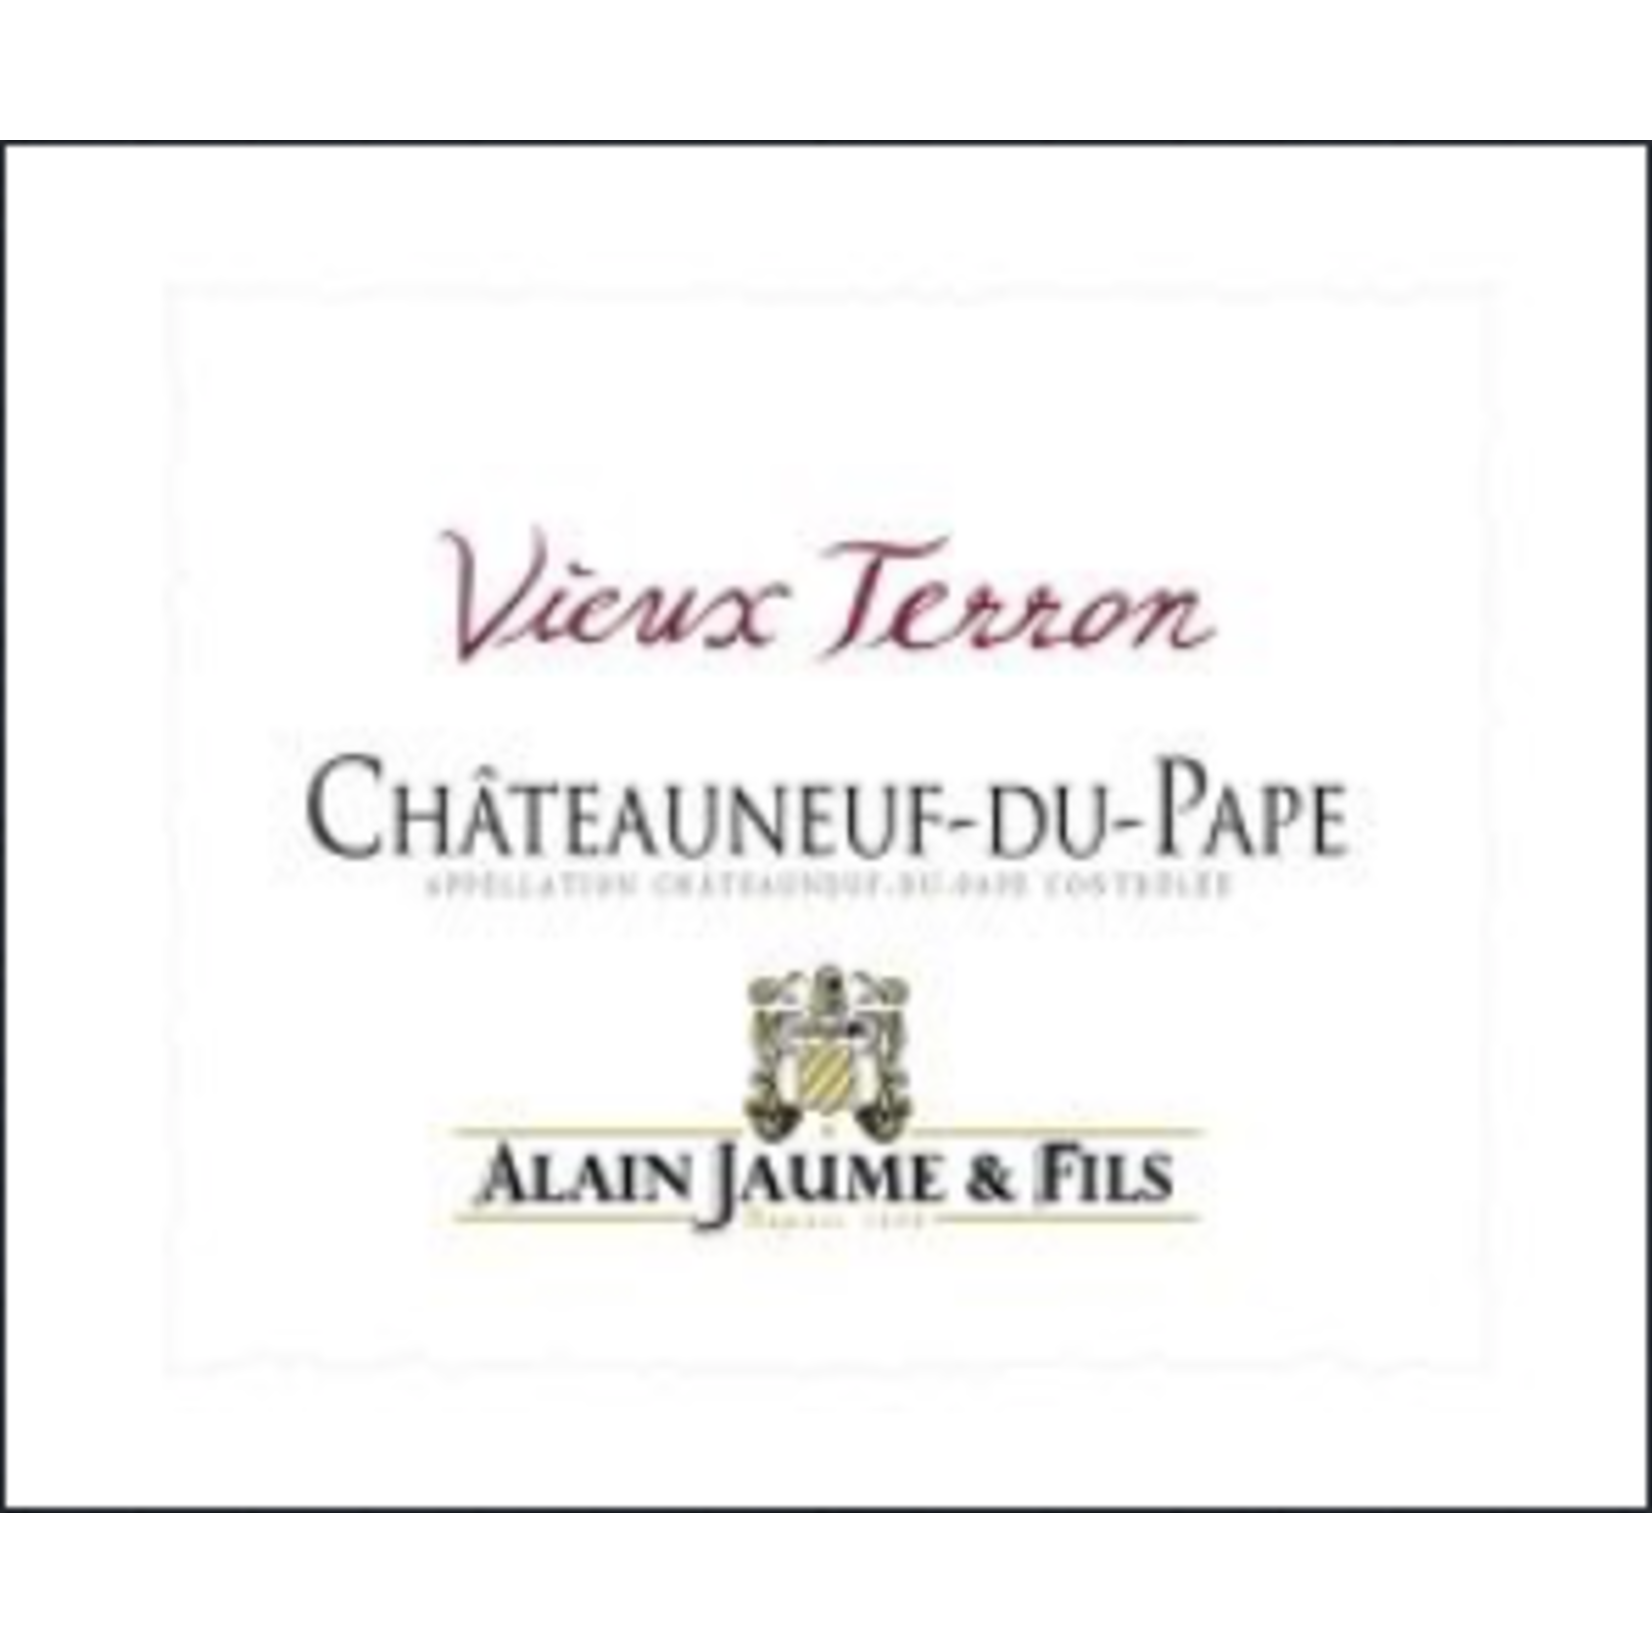 Alain Jaume Alain Jaume & Fils Chateauneuf-du-Pape Vieux Terron 2021 Rhone France